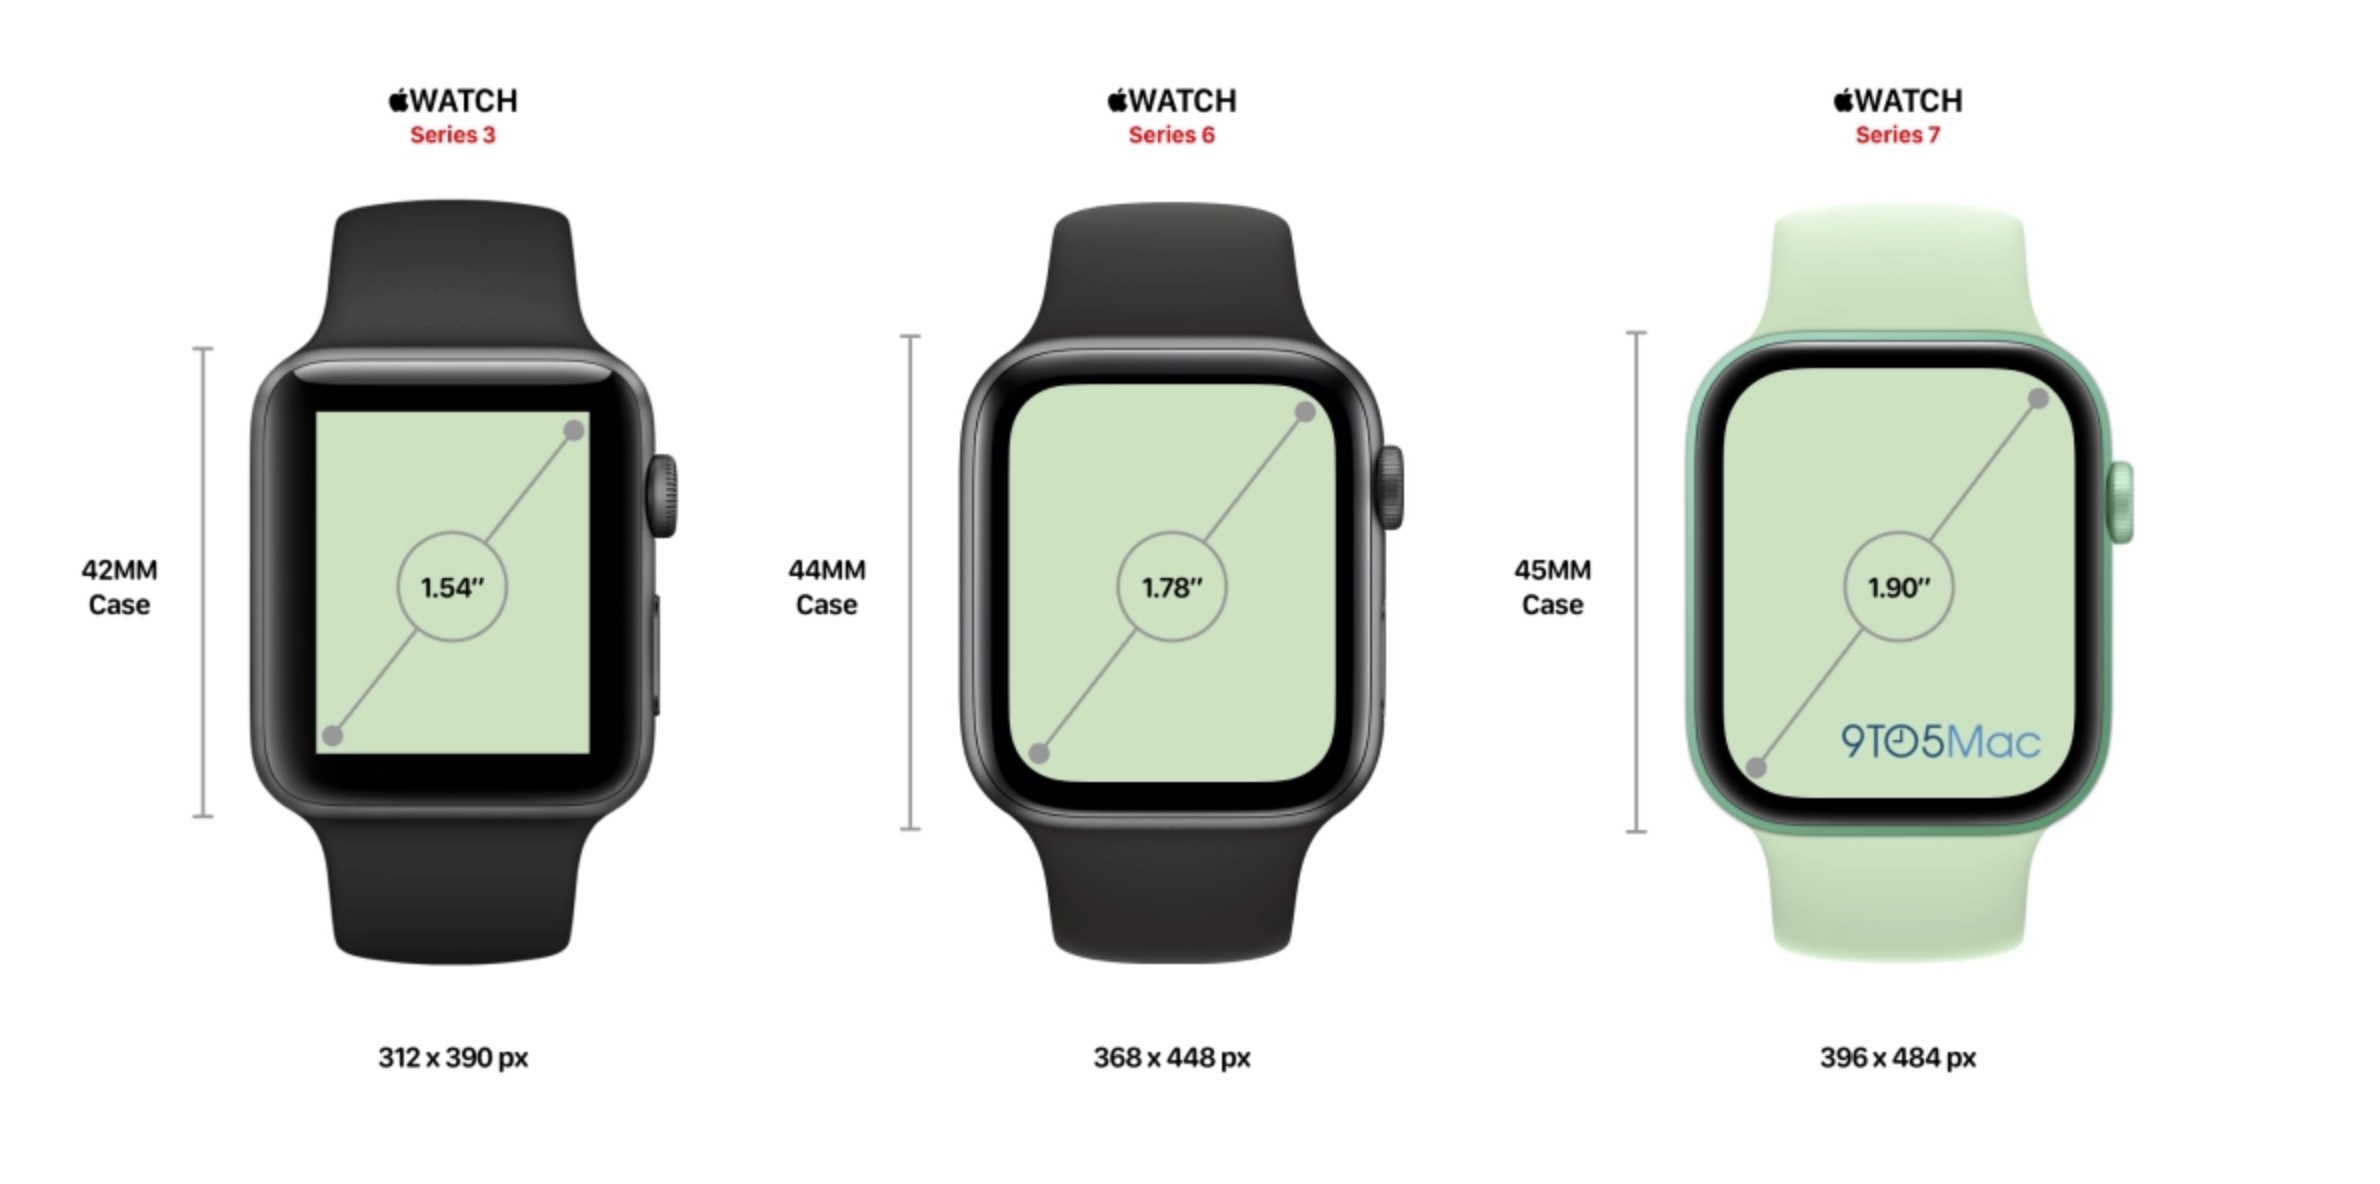 苹果2021年秋季发布会 新款iPhone与Apple Watch有望登场